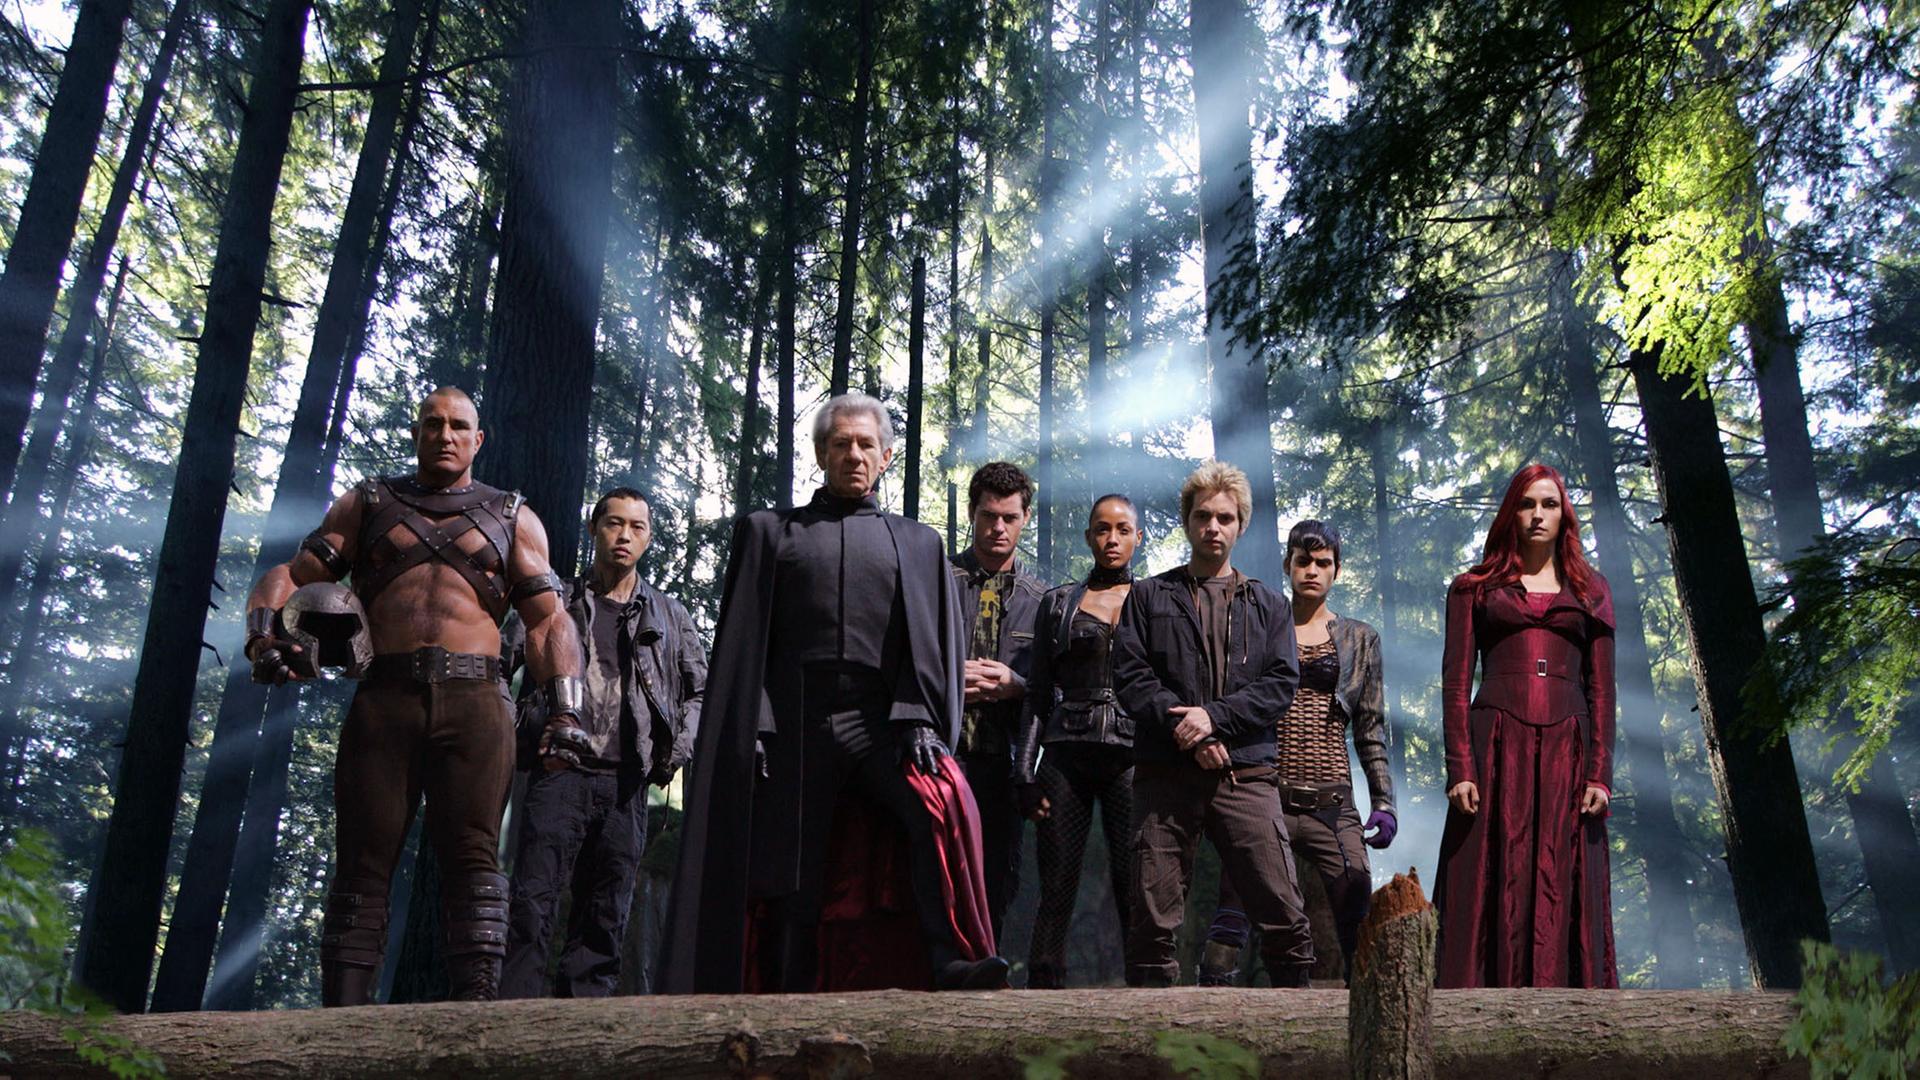 Filmszene aus "X-Men: Der letzte Widerstand" von 2006 bei der mehrere Figuren aus dem Marvel-Universum im Wald stehen.